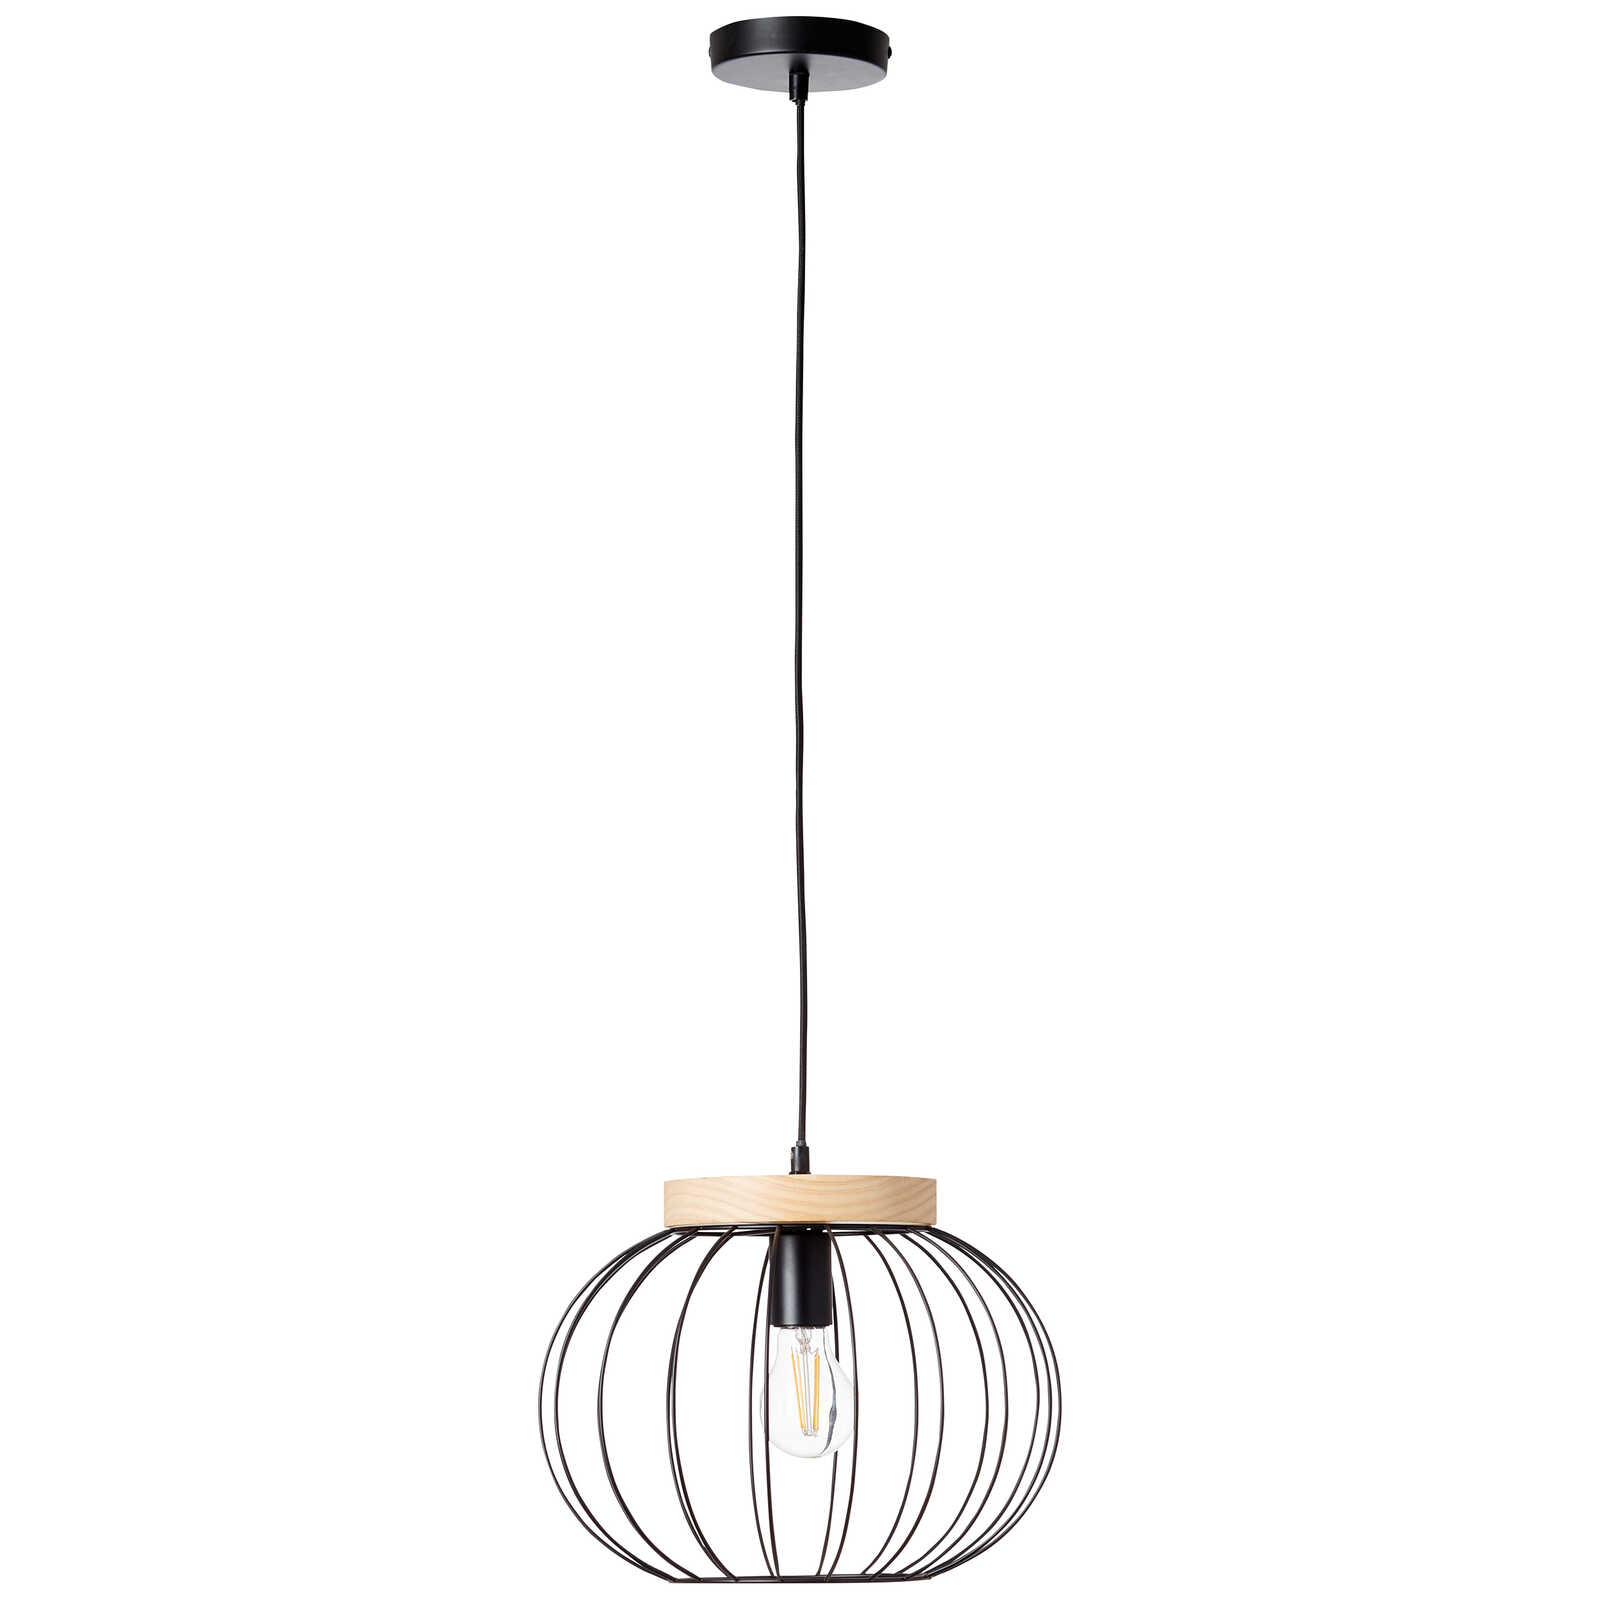             Houten hanglamp - Oliver 2 - Bruin
        